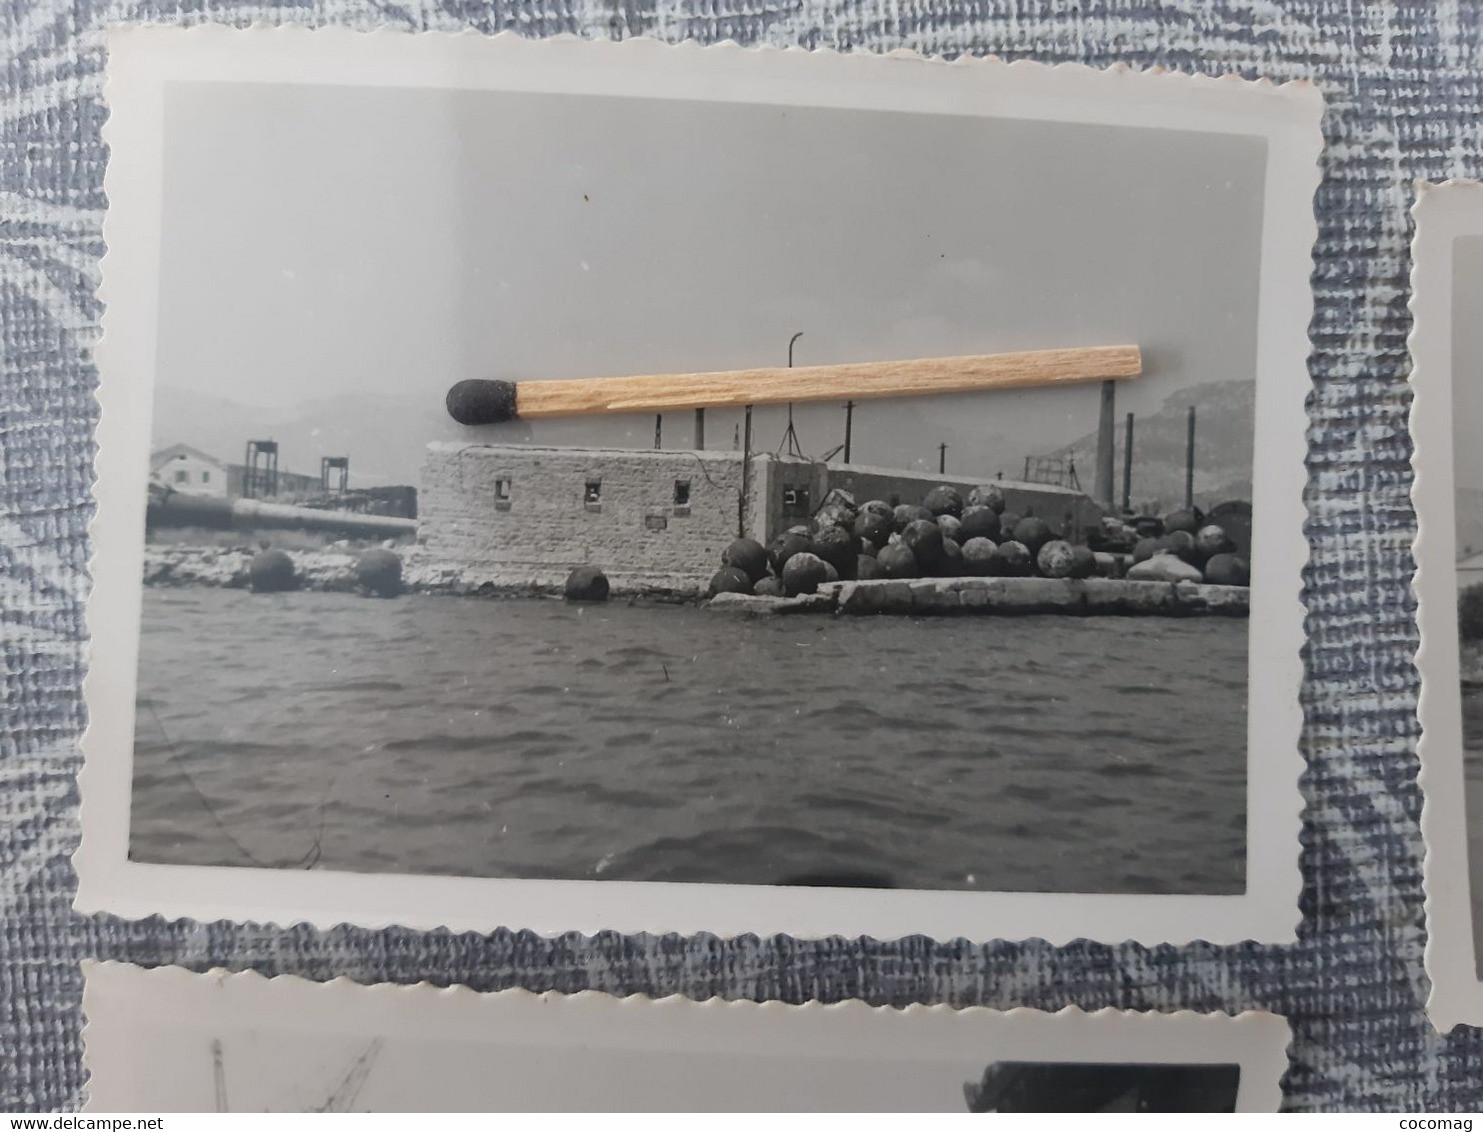 83 TOULON  PHOTO ORIGINALE 27 JUIN 1948 14 SABORDAGE DE LA FLOTTE FRANCAISE BATEAU MILITARIA - Schiffe